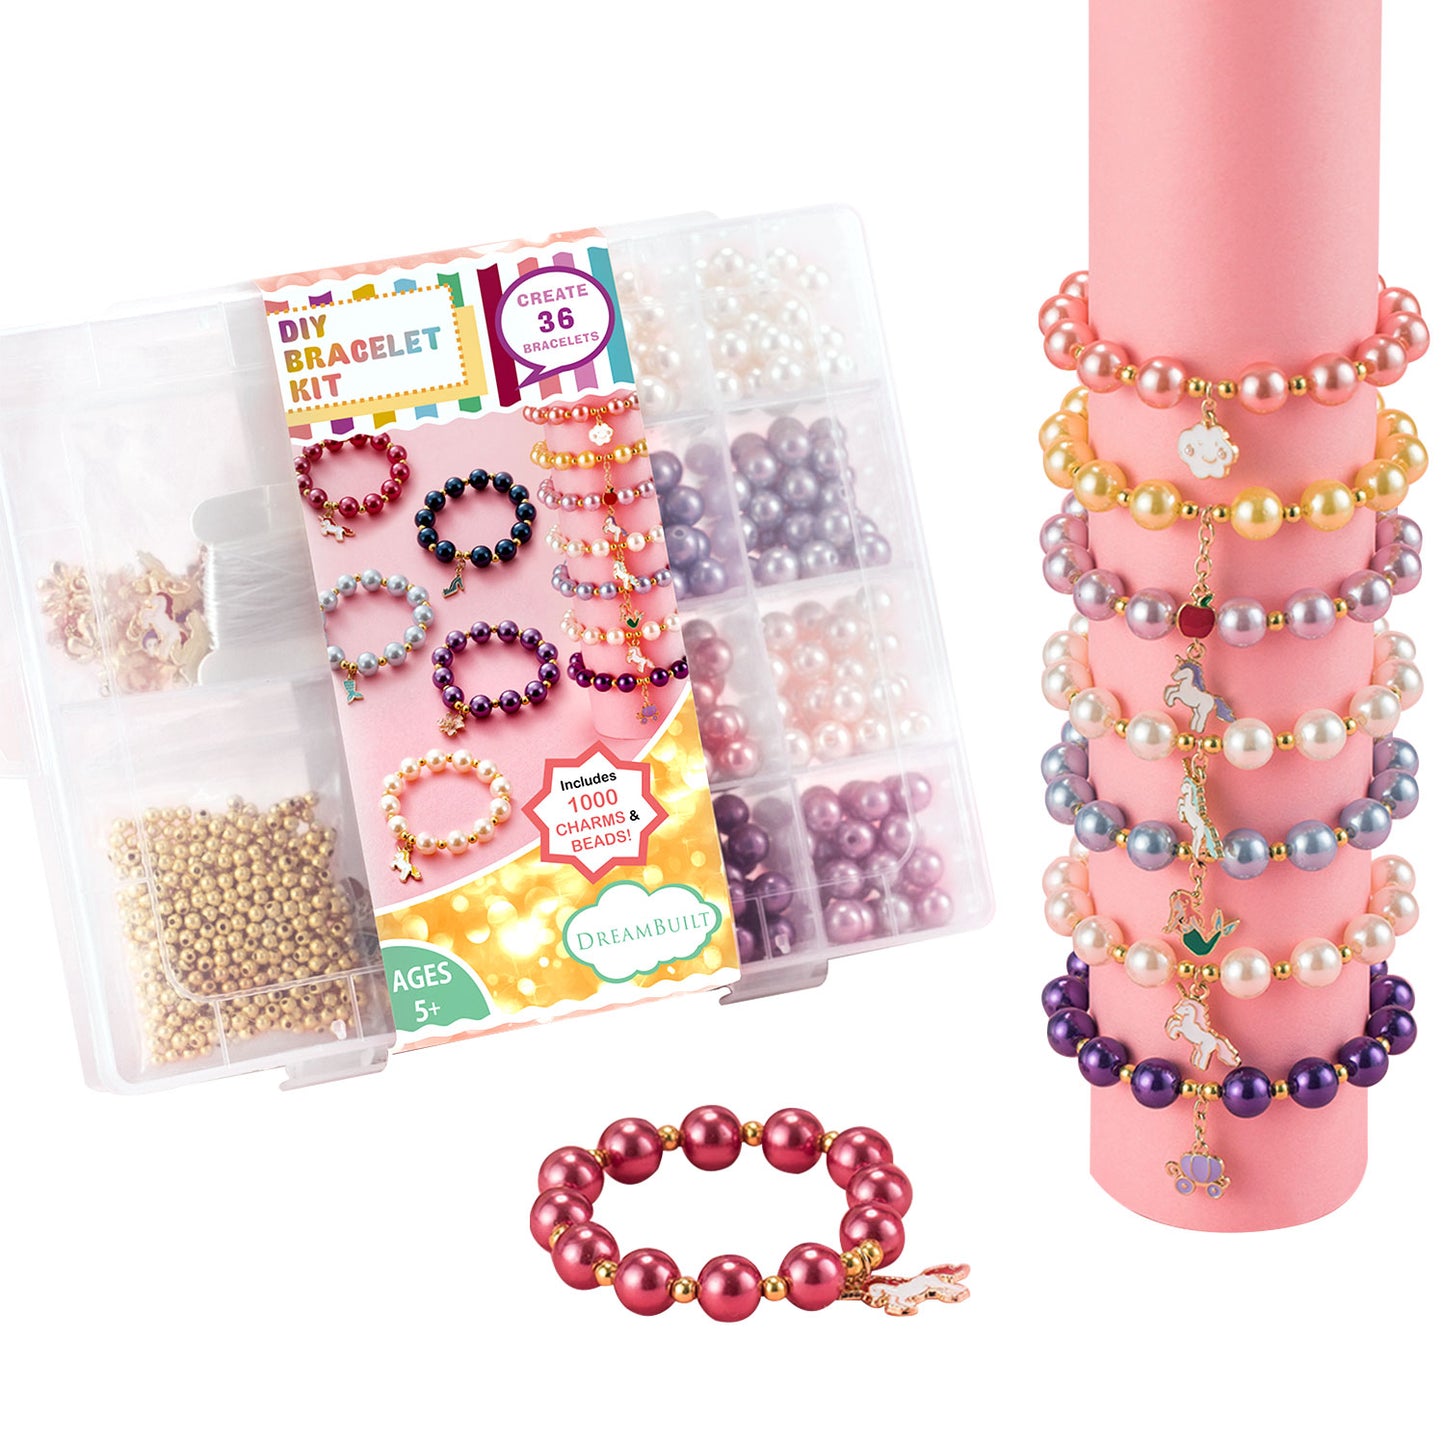 DIY Bracelet Kit, DIY Bracelet Making Kit, Girl's Bracelet Kit 